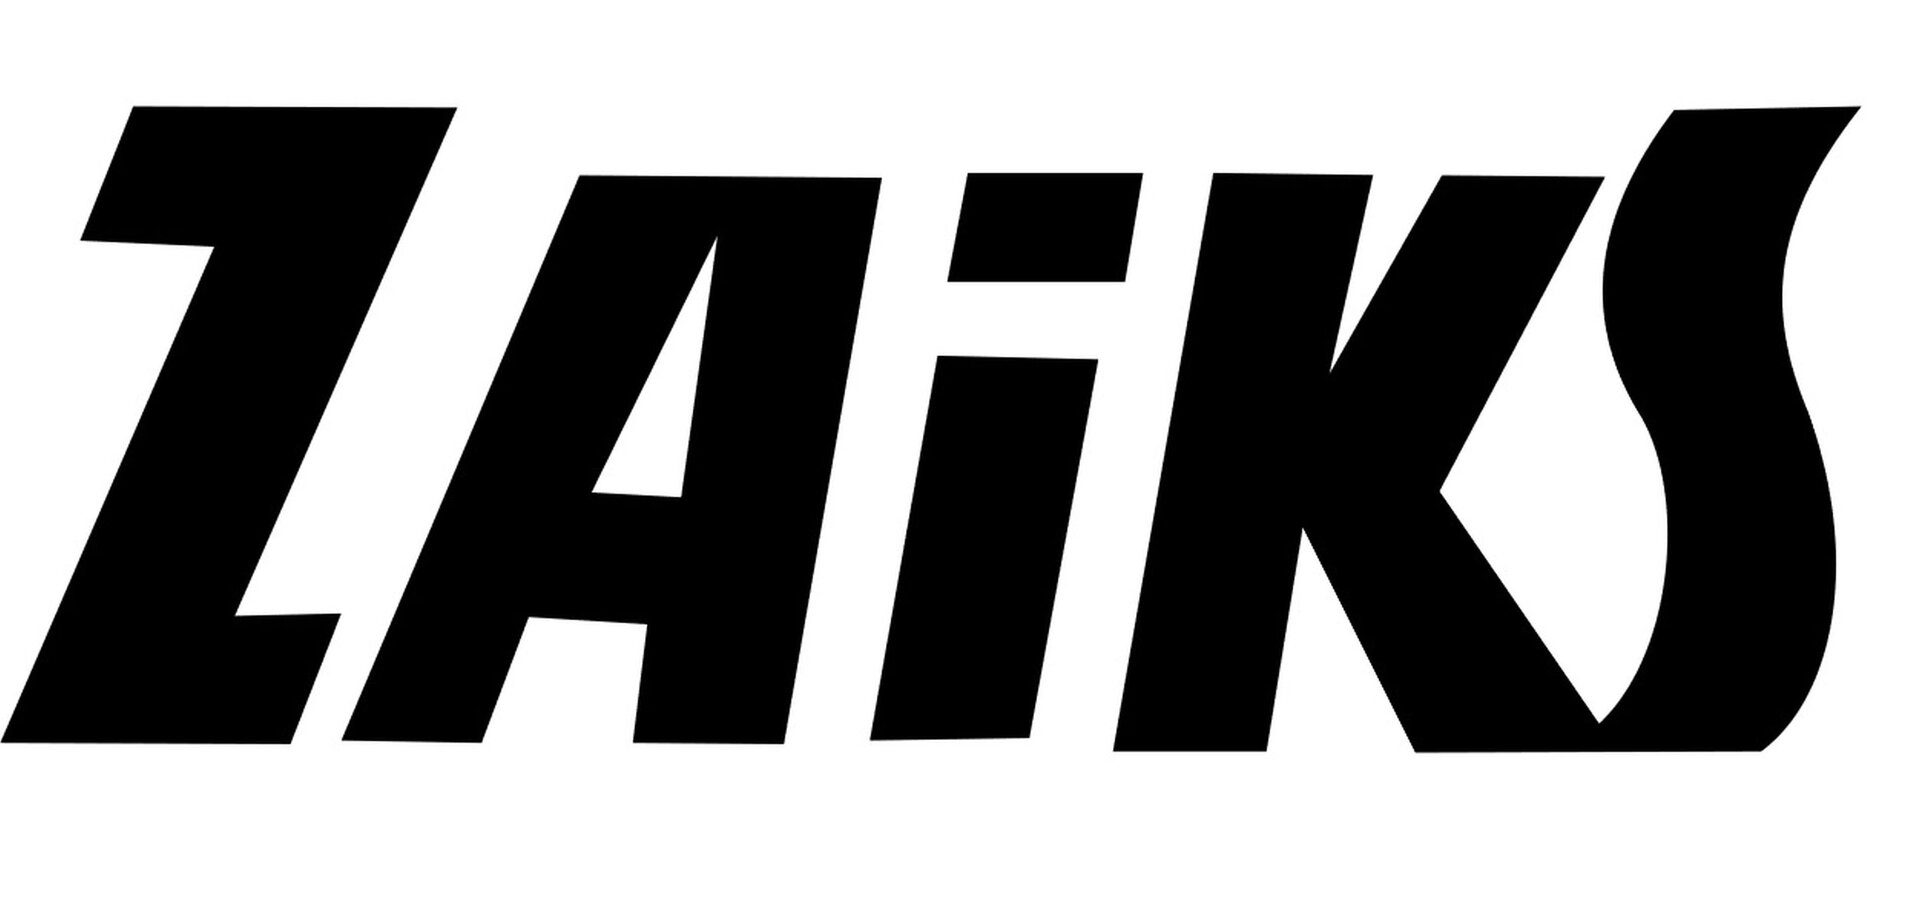 Ilustracja przedstawia logo Stowarzyszenia Autorów ZAIKS.